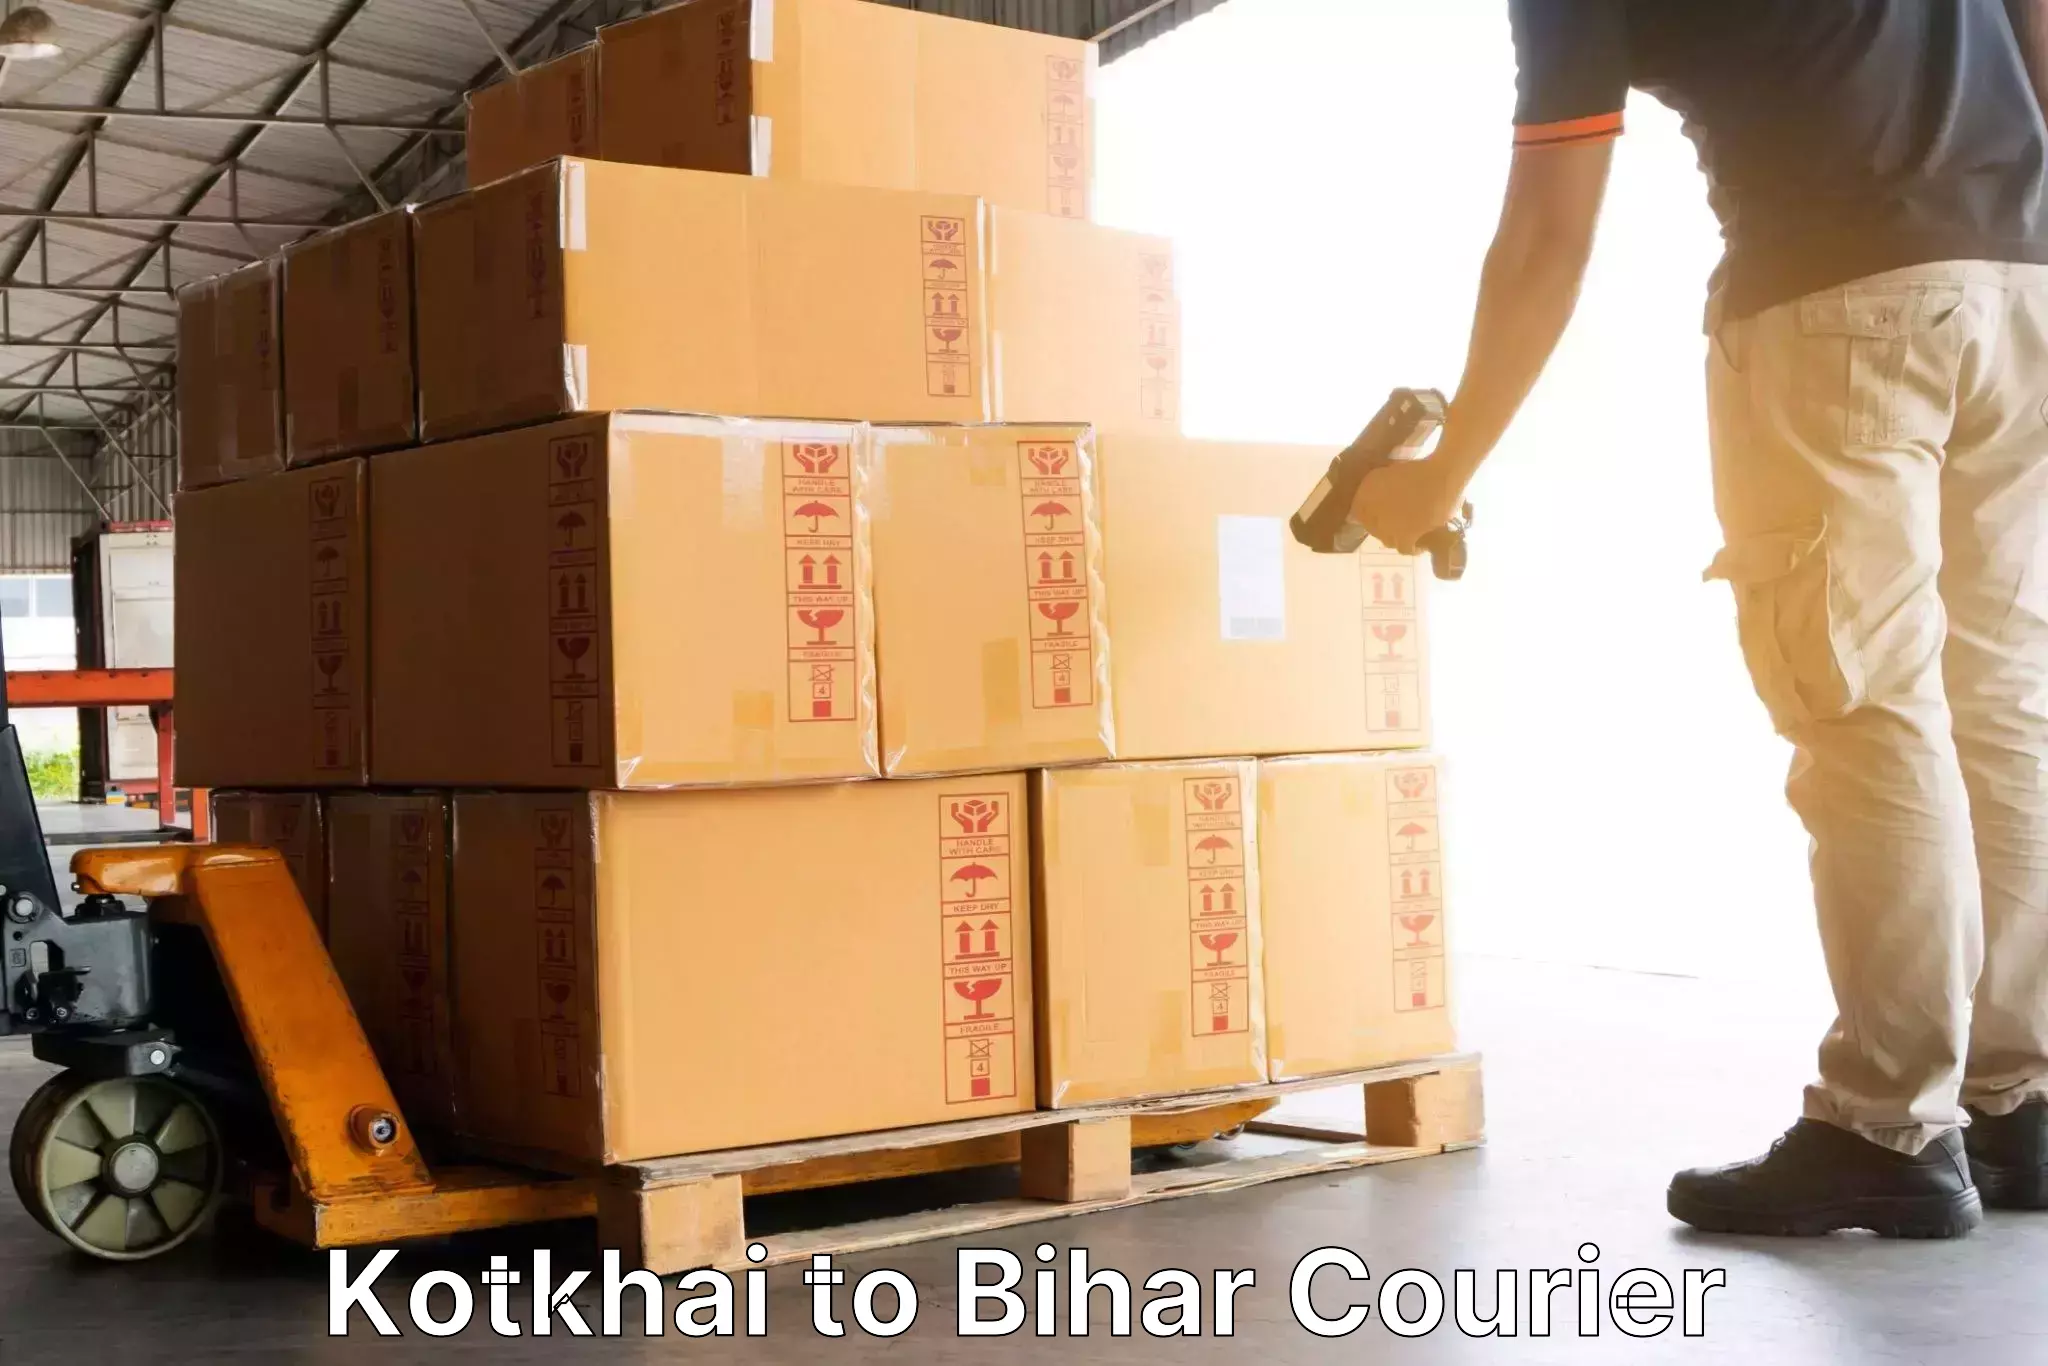 Courier dispatch services Kotkhai to Goh Aurangabad